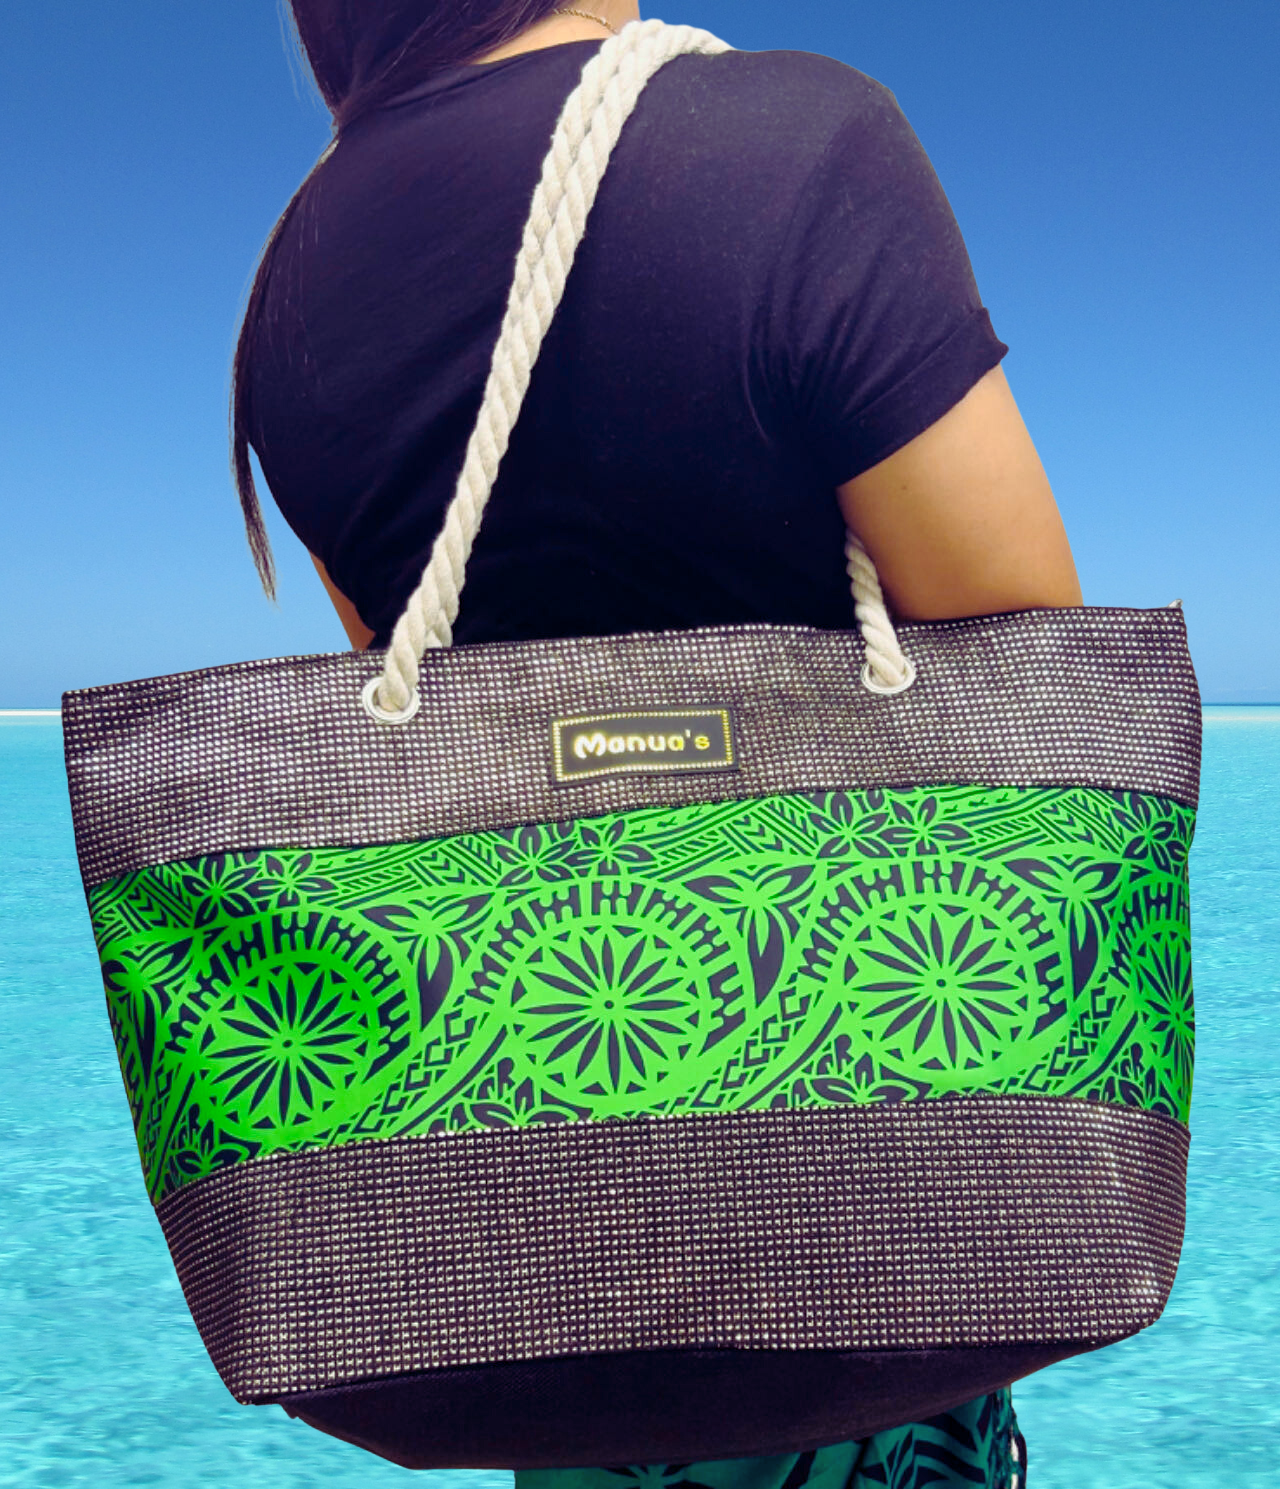 Samoan Design Tote Bag - Middle Print Black On Green